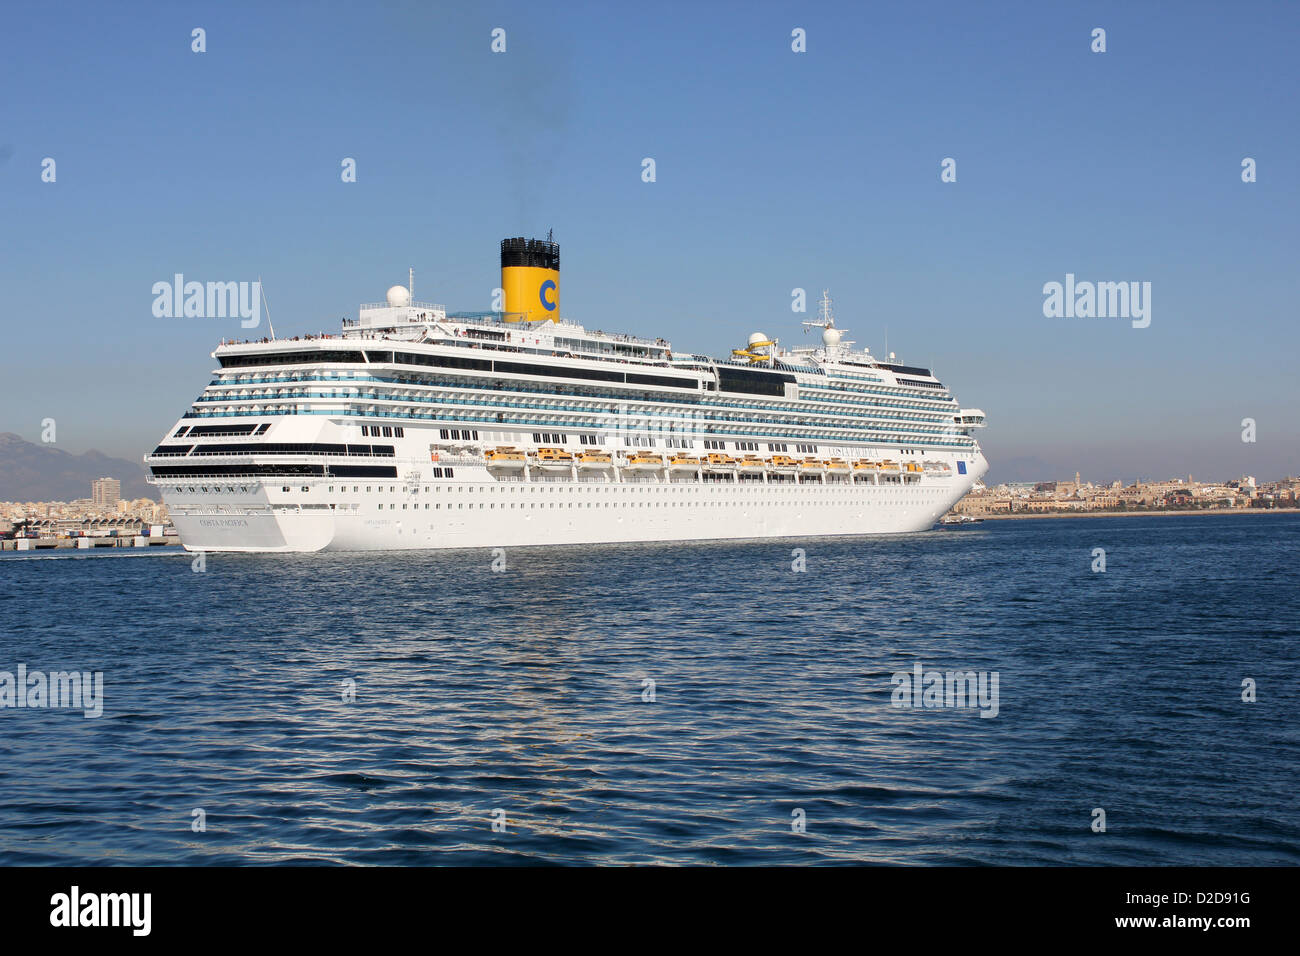 Costa Cruise Lines Cruise Ship “Costa Pacifica” - departing the Port of Palma de Mallorca / Majorca. Stock Photo